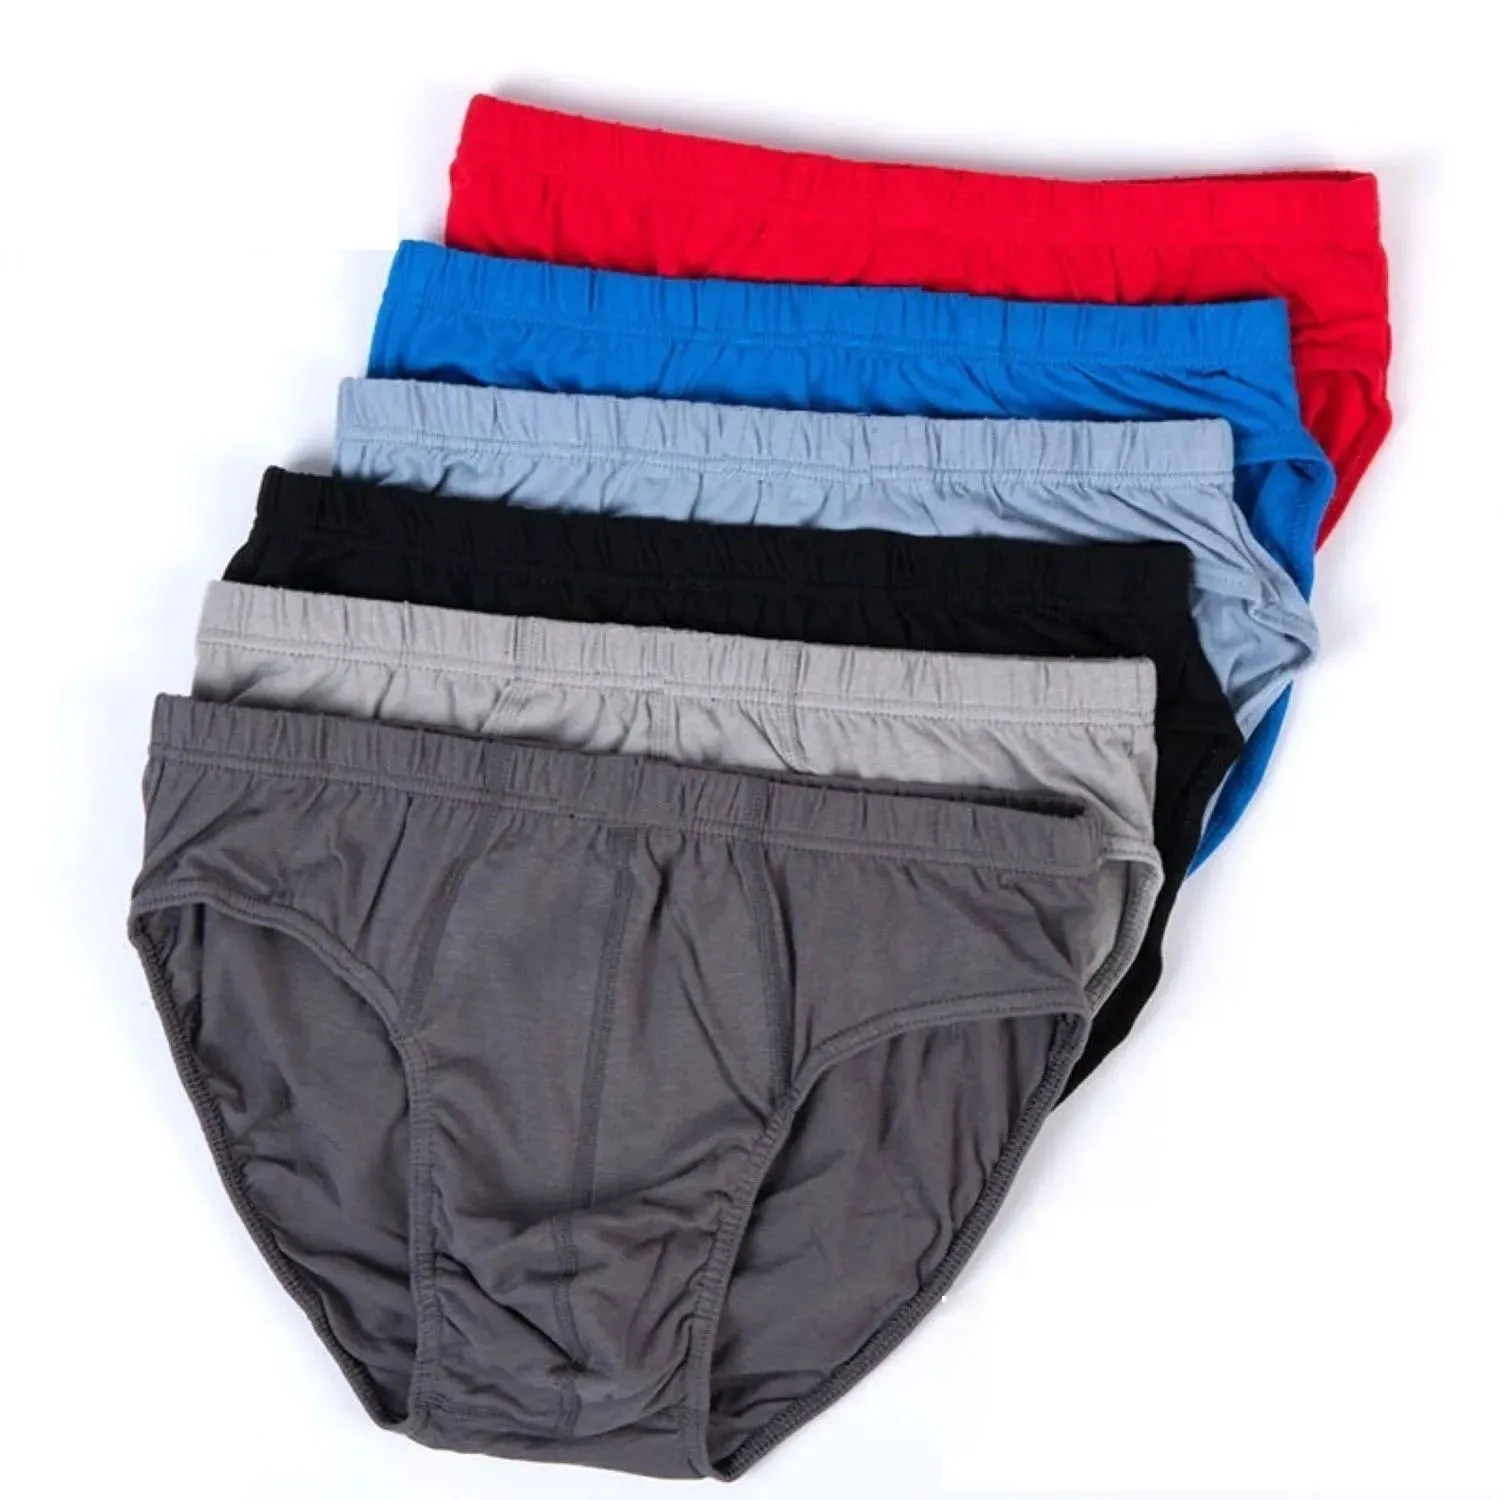 100% Cotton Men's Underwear Comfortable Middle-aged Mens Briefs Solid Color Large Size Fat Middle Waist Pants Men Lingerie